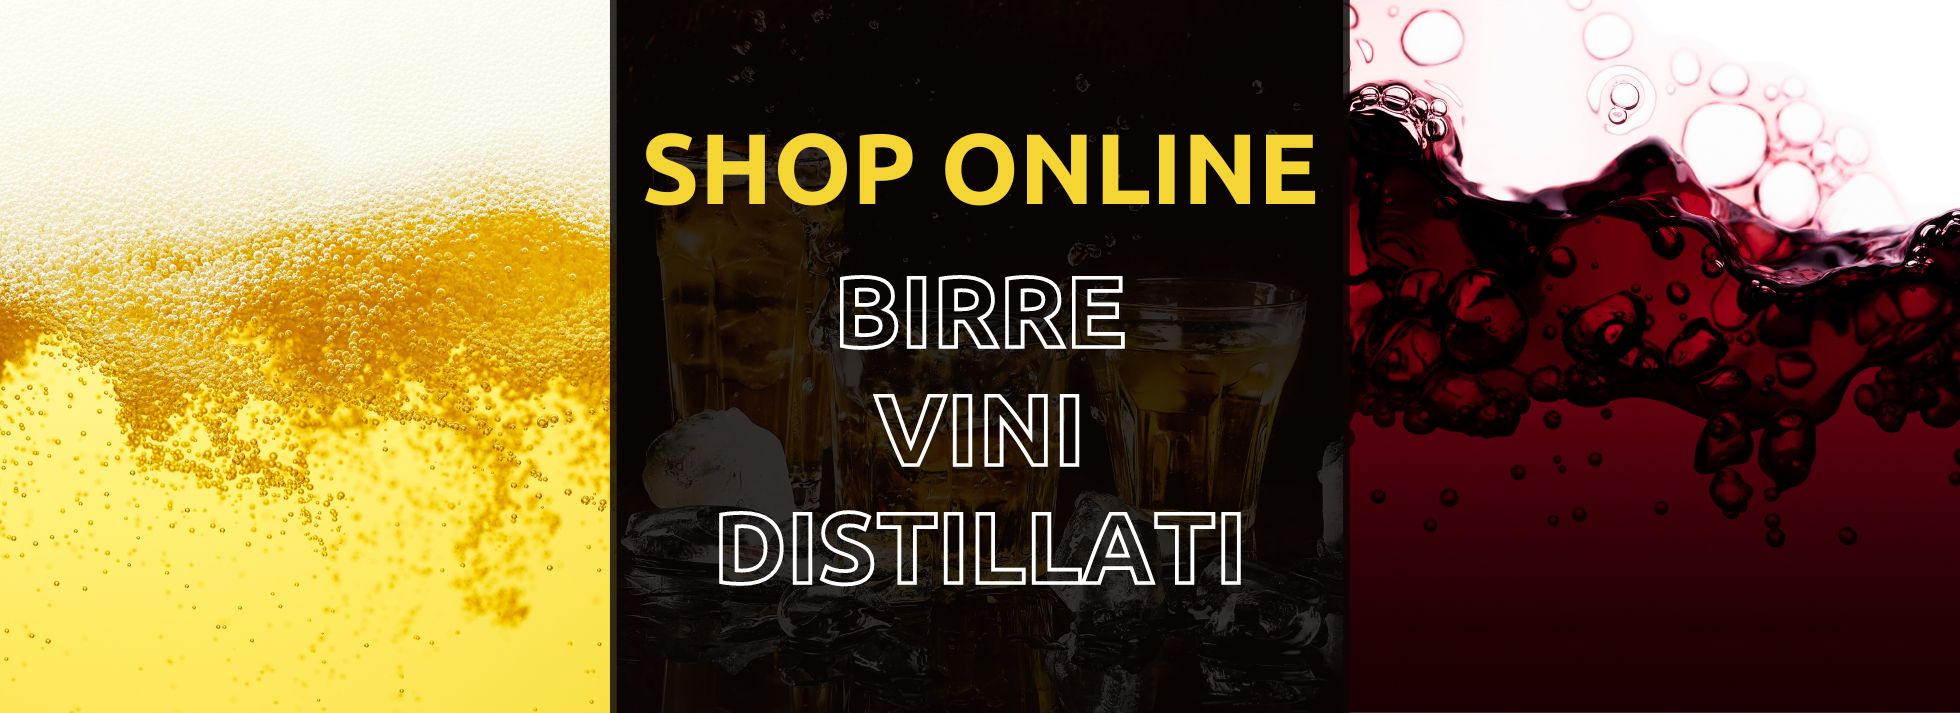 Online Shop Birre